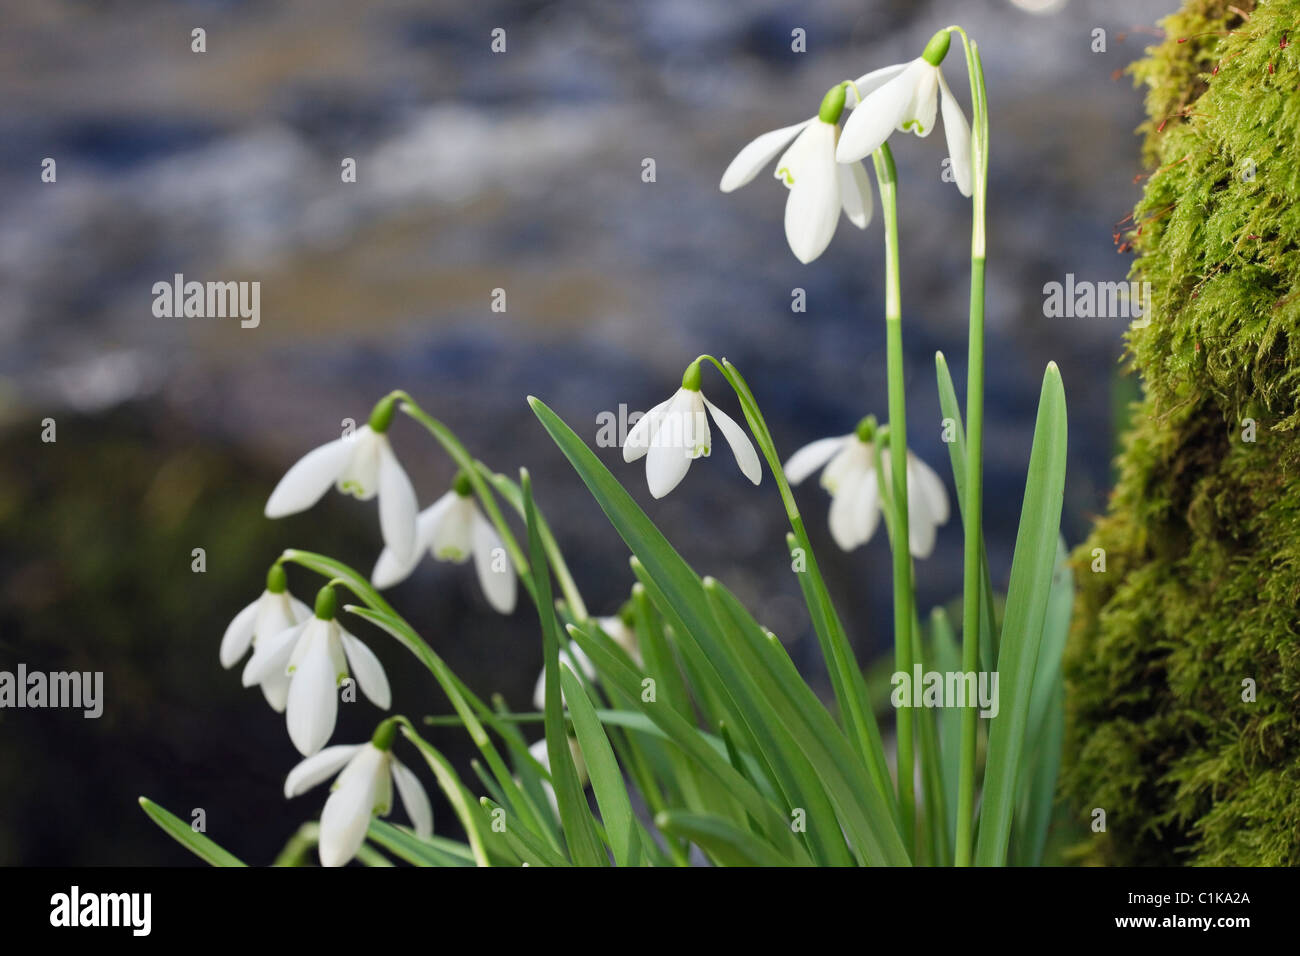 Plantes de Snowdrops sauvages indigènes (Galanthus nivalis) fleurs sauvages qui poussent à côté de l'eau dans la rivière Afon Dwyfor en hiver. Gwynedd Pays de Galles Royaume-Uni Grande-Bretagne Banque D'Images